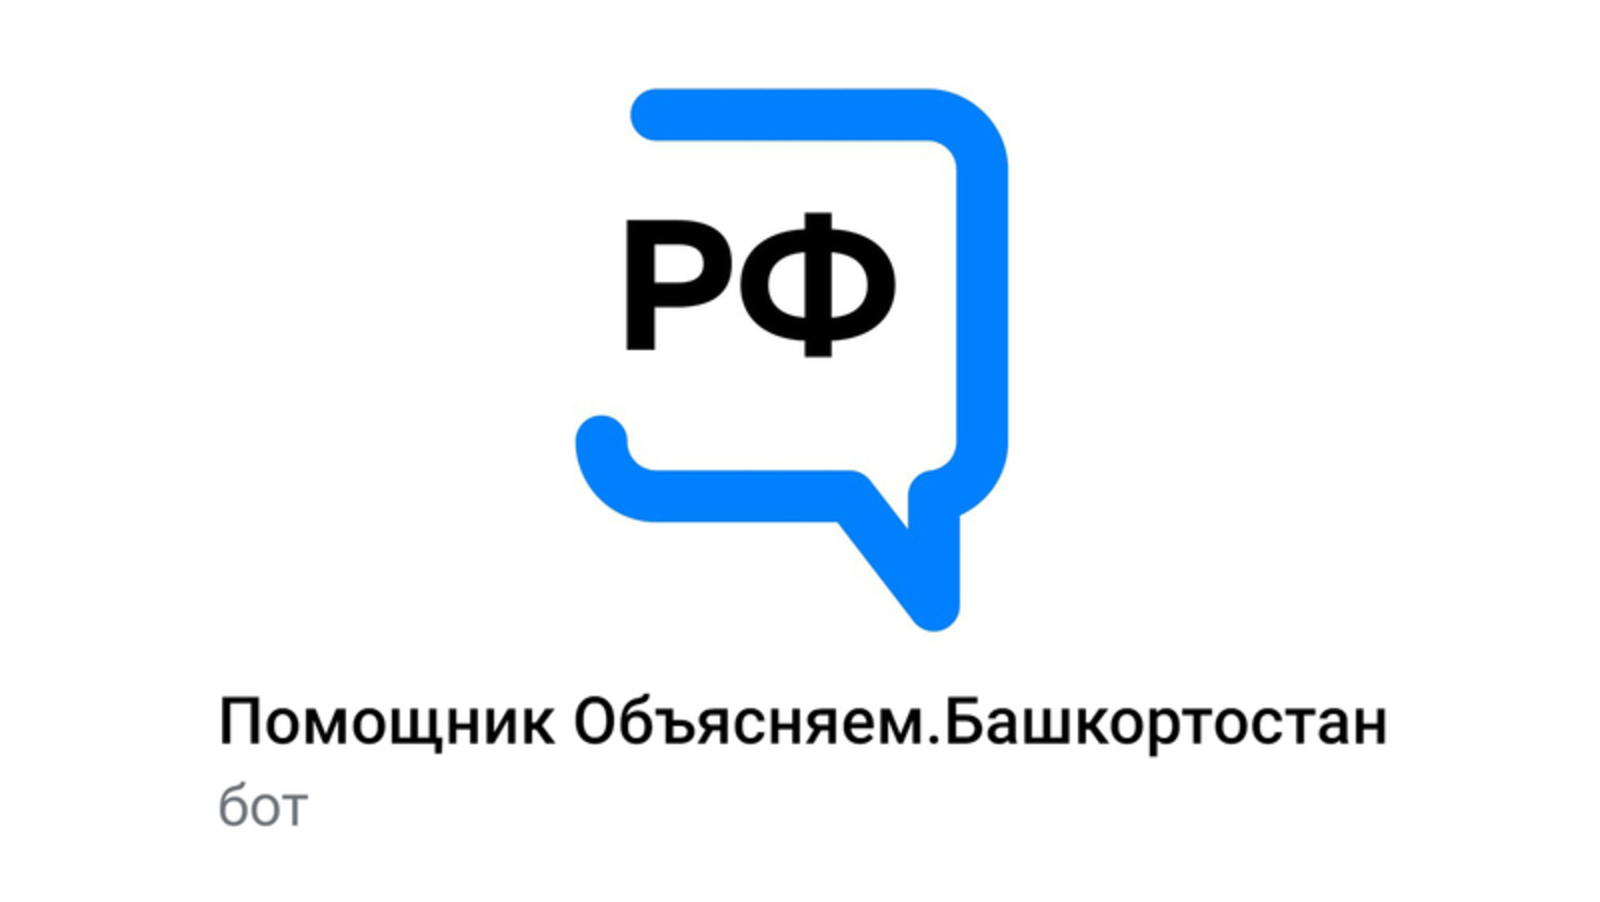 В Башкортостане появился чат-бот, который поможет жителям найти ответы на актуальные вопросы